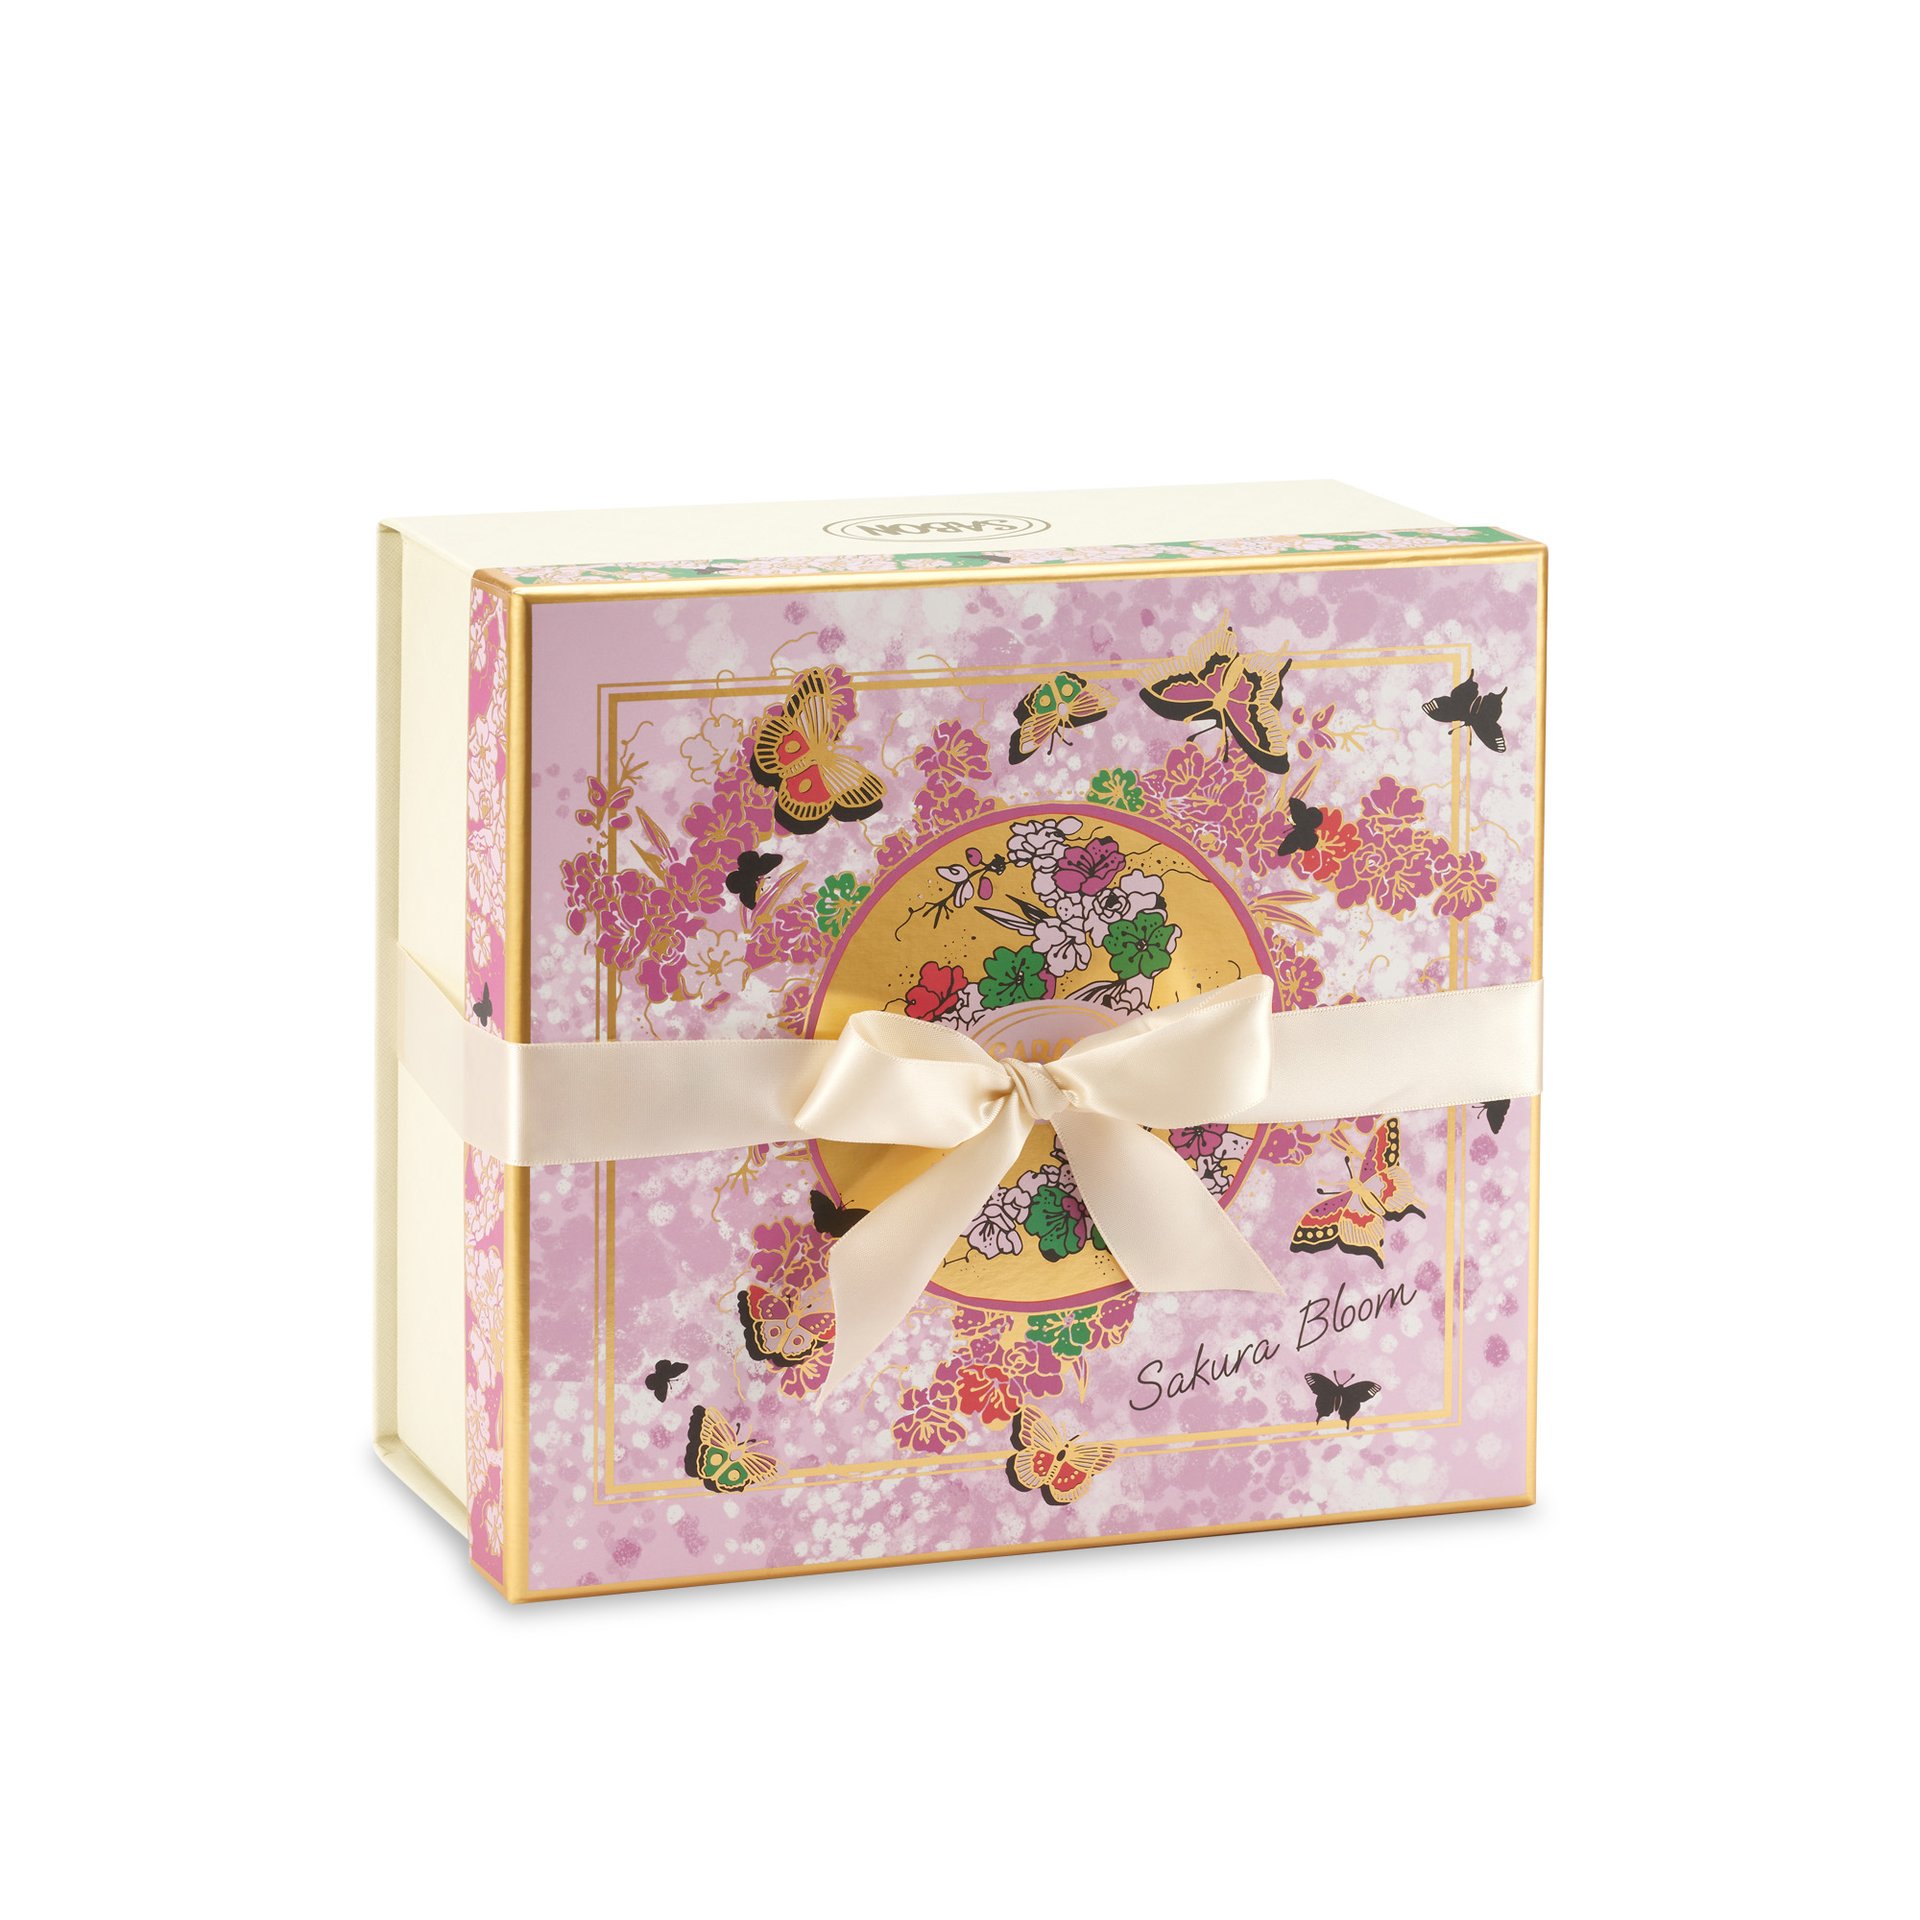 Gift Box M Sakura Bloom - 1 pcs.